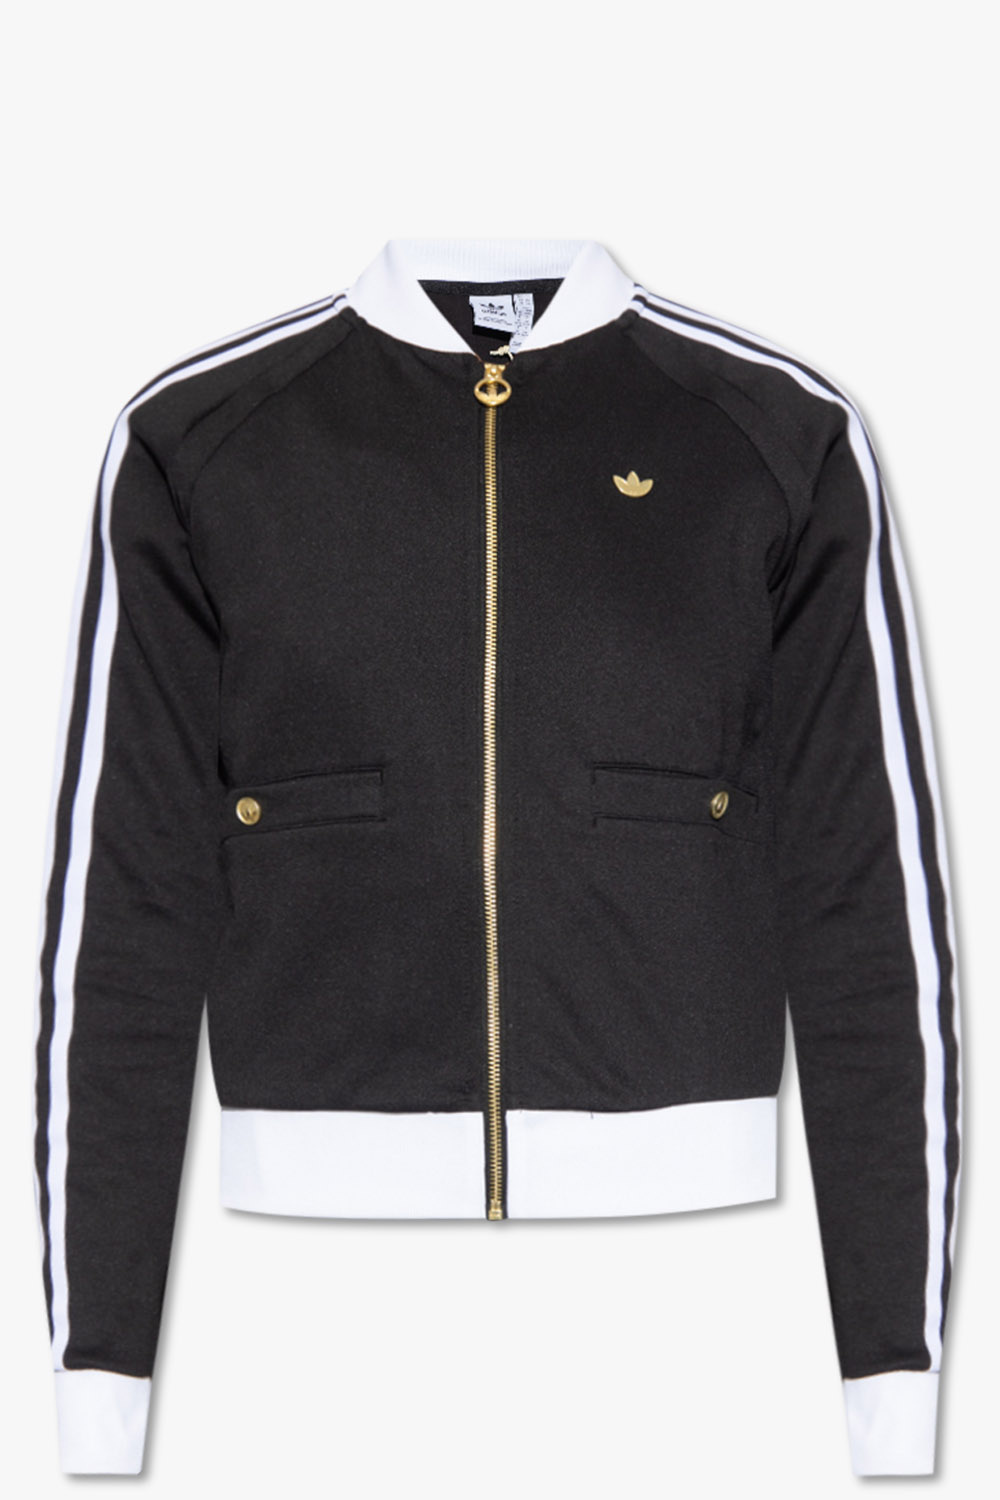 adidas, Jackets & Coats, Adidasoriginals Nigo Bear Track Jacket L